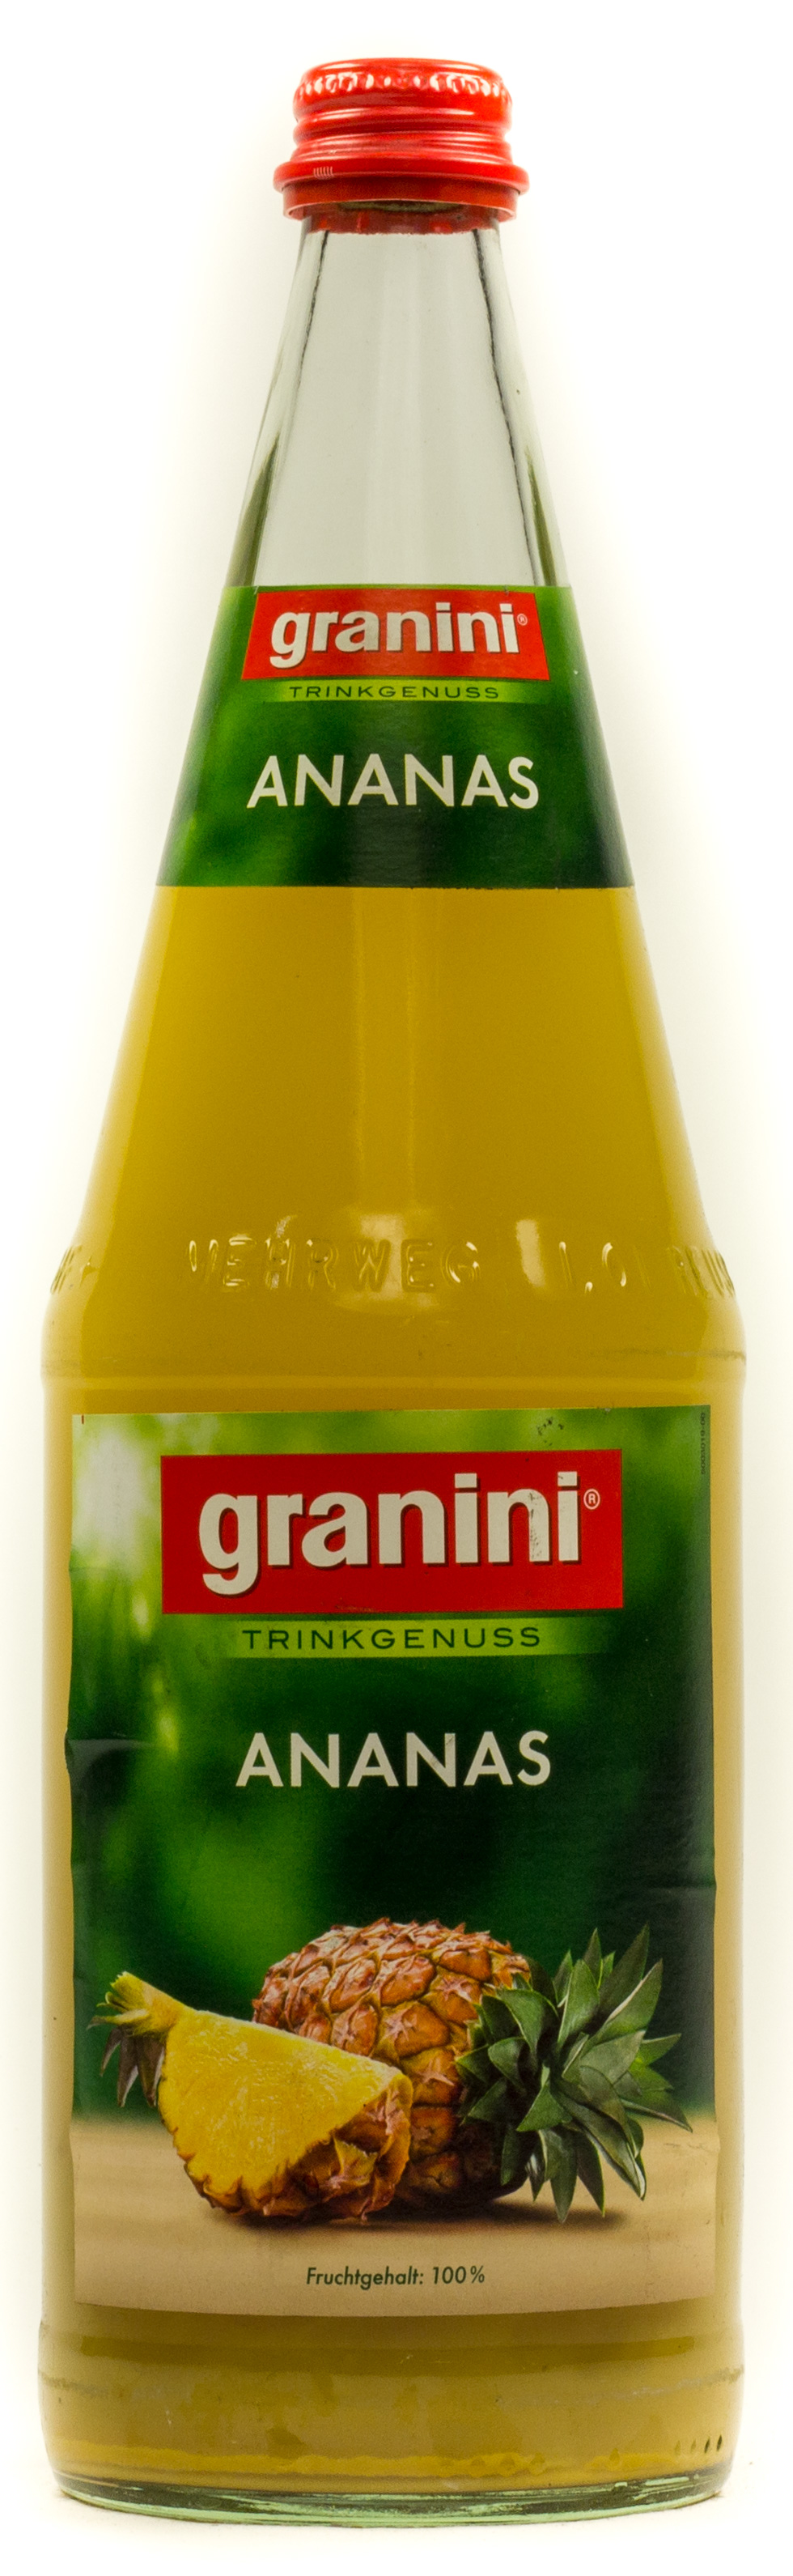 Granini Trinkgenuss Ananas Kasten 6 x 1 l Glas Mehrweg